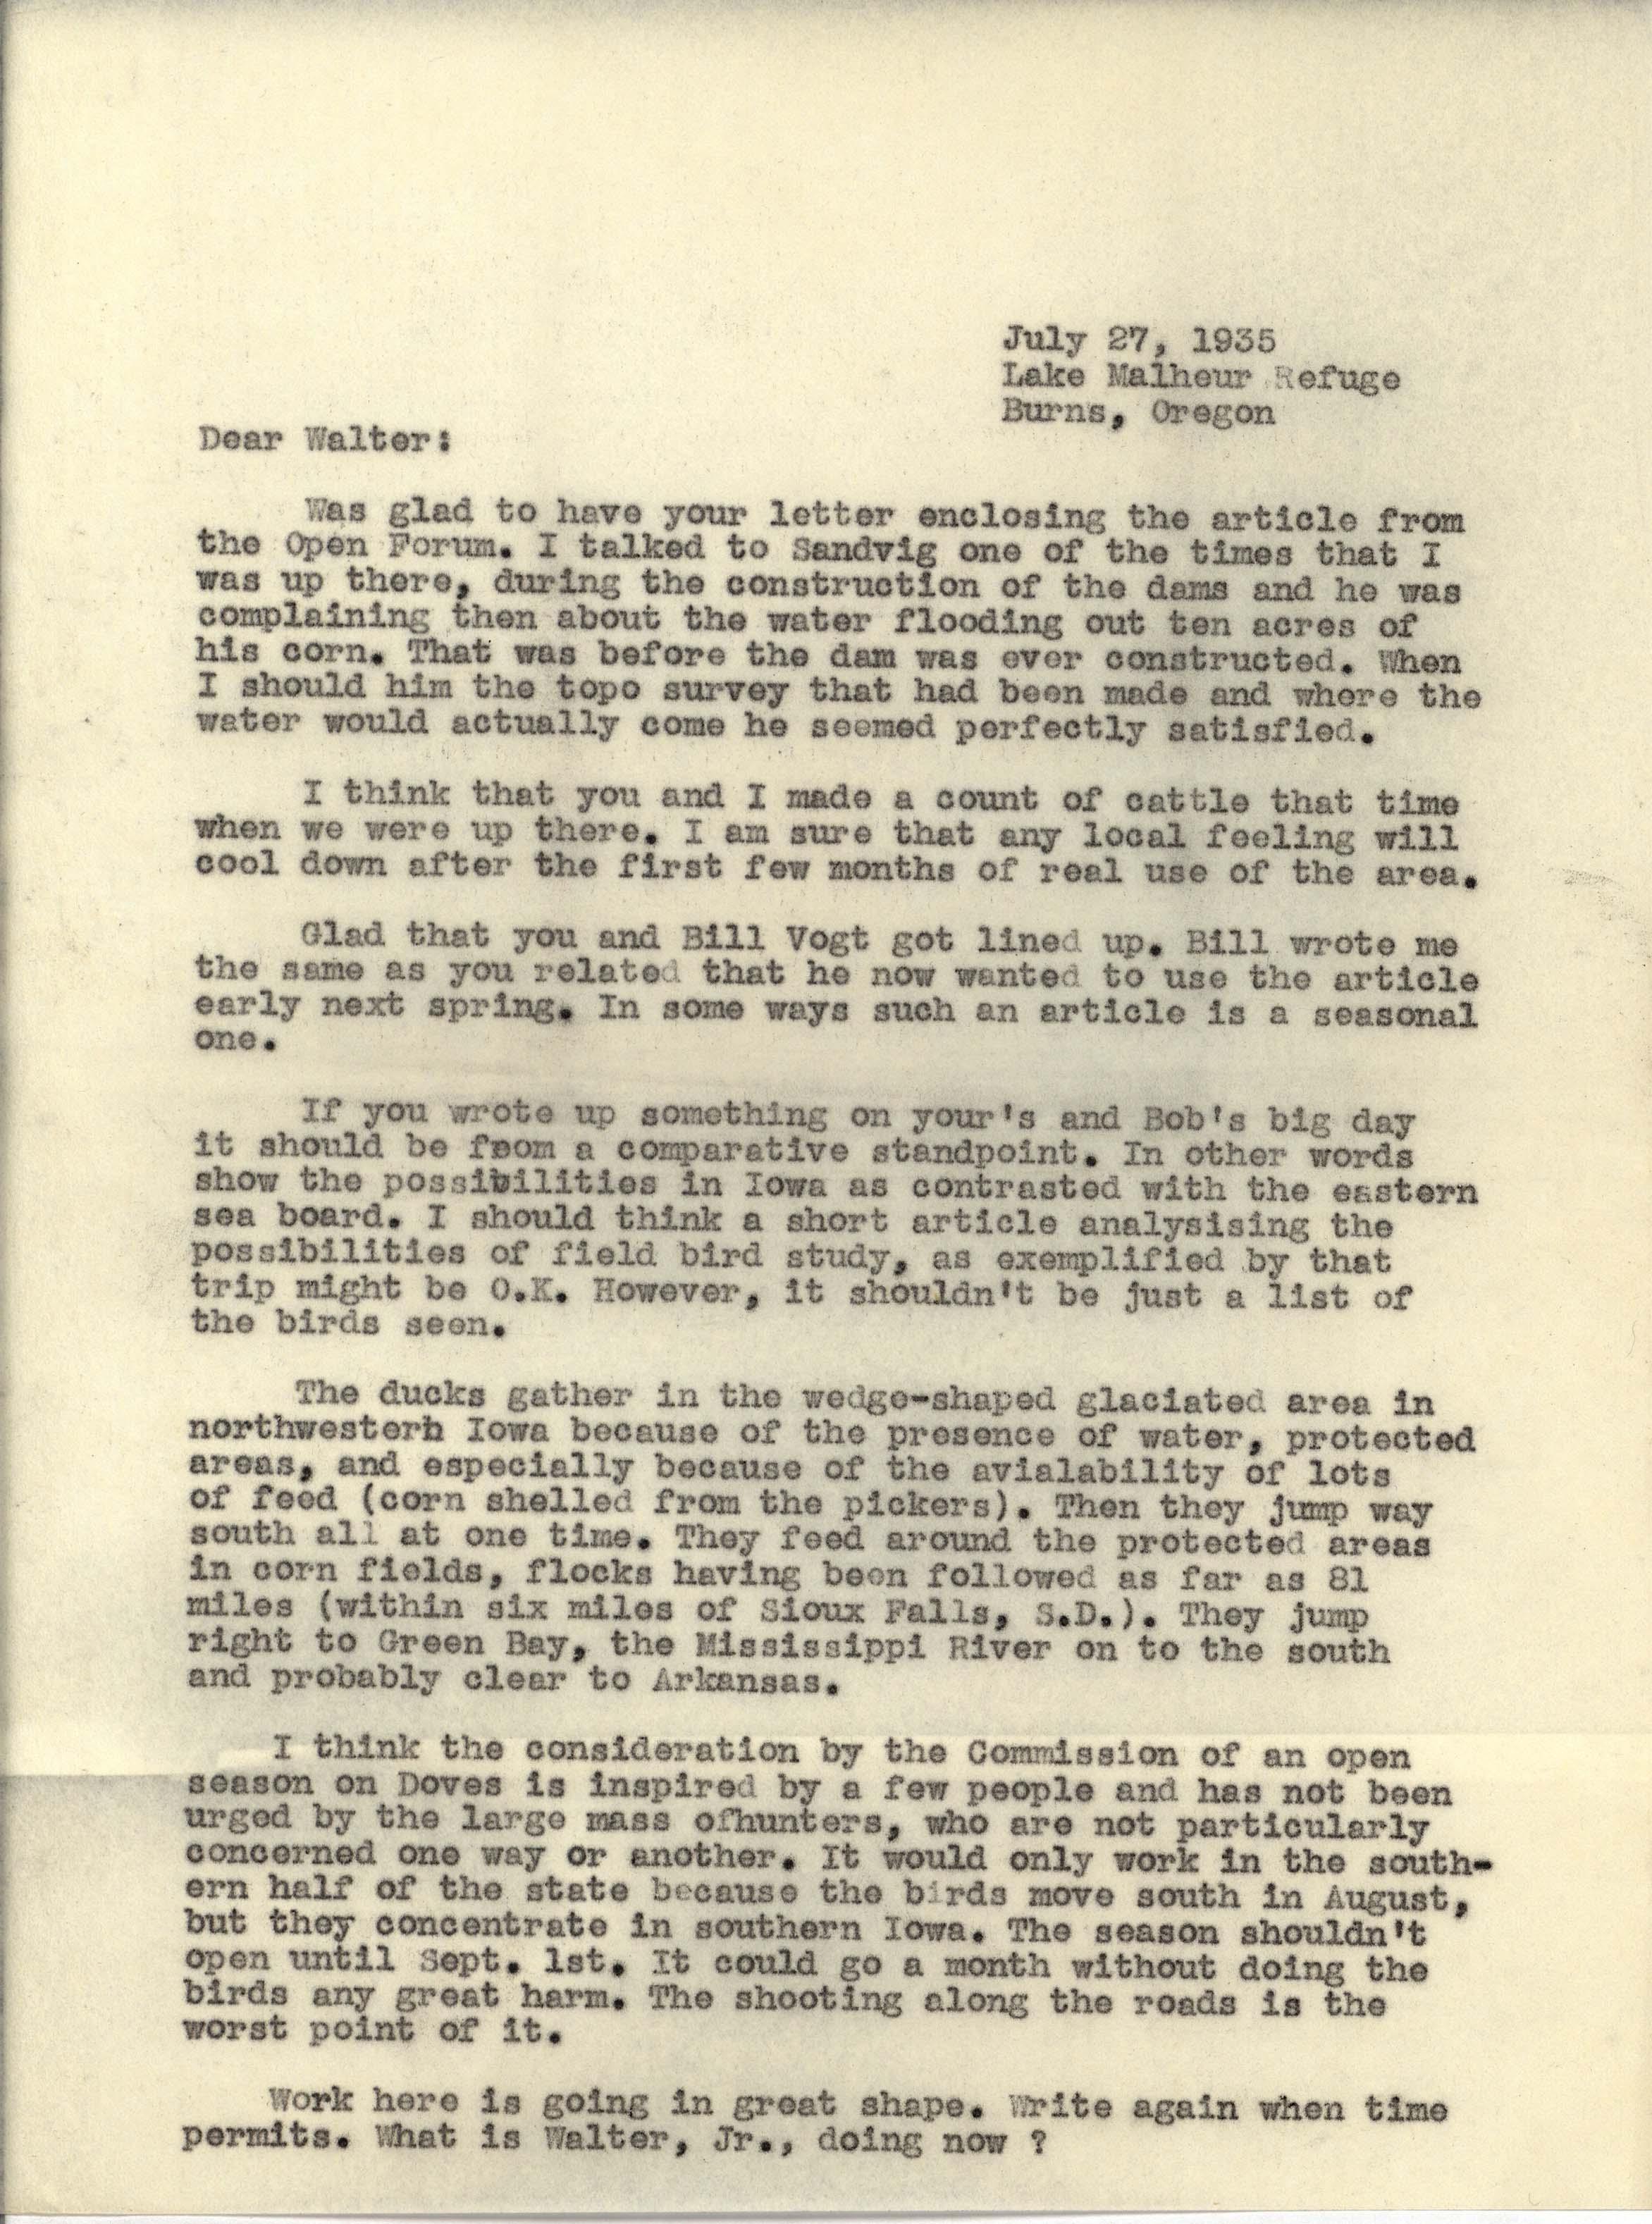 Philip DuMont letter to Walter Rosene regarding articles, Ducks and Doves, July 27, 1935